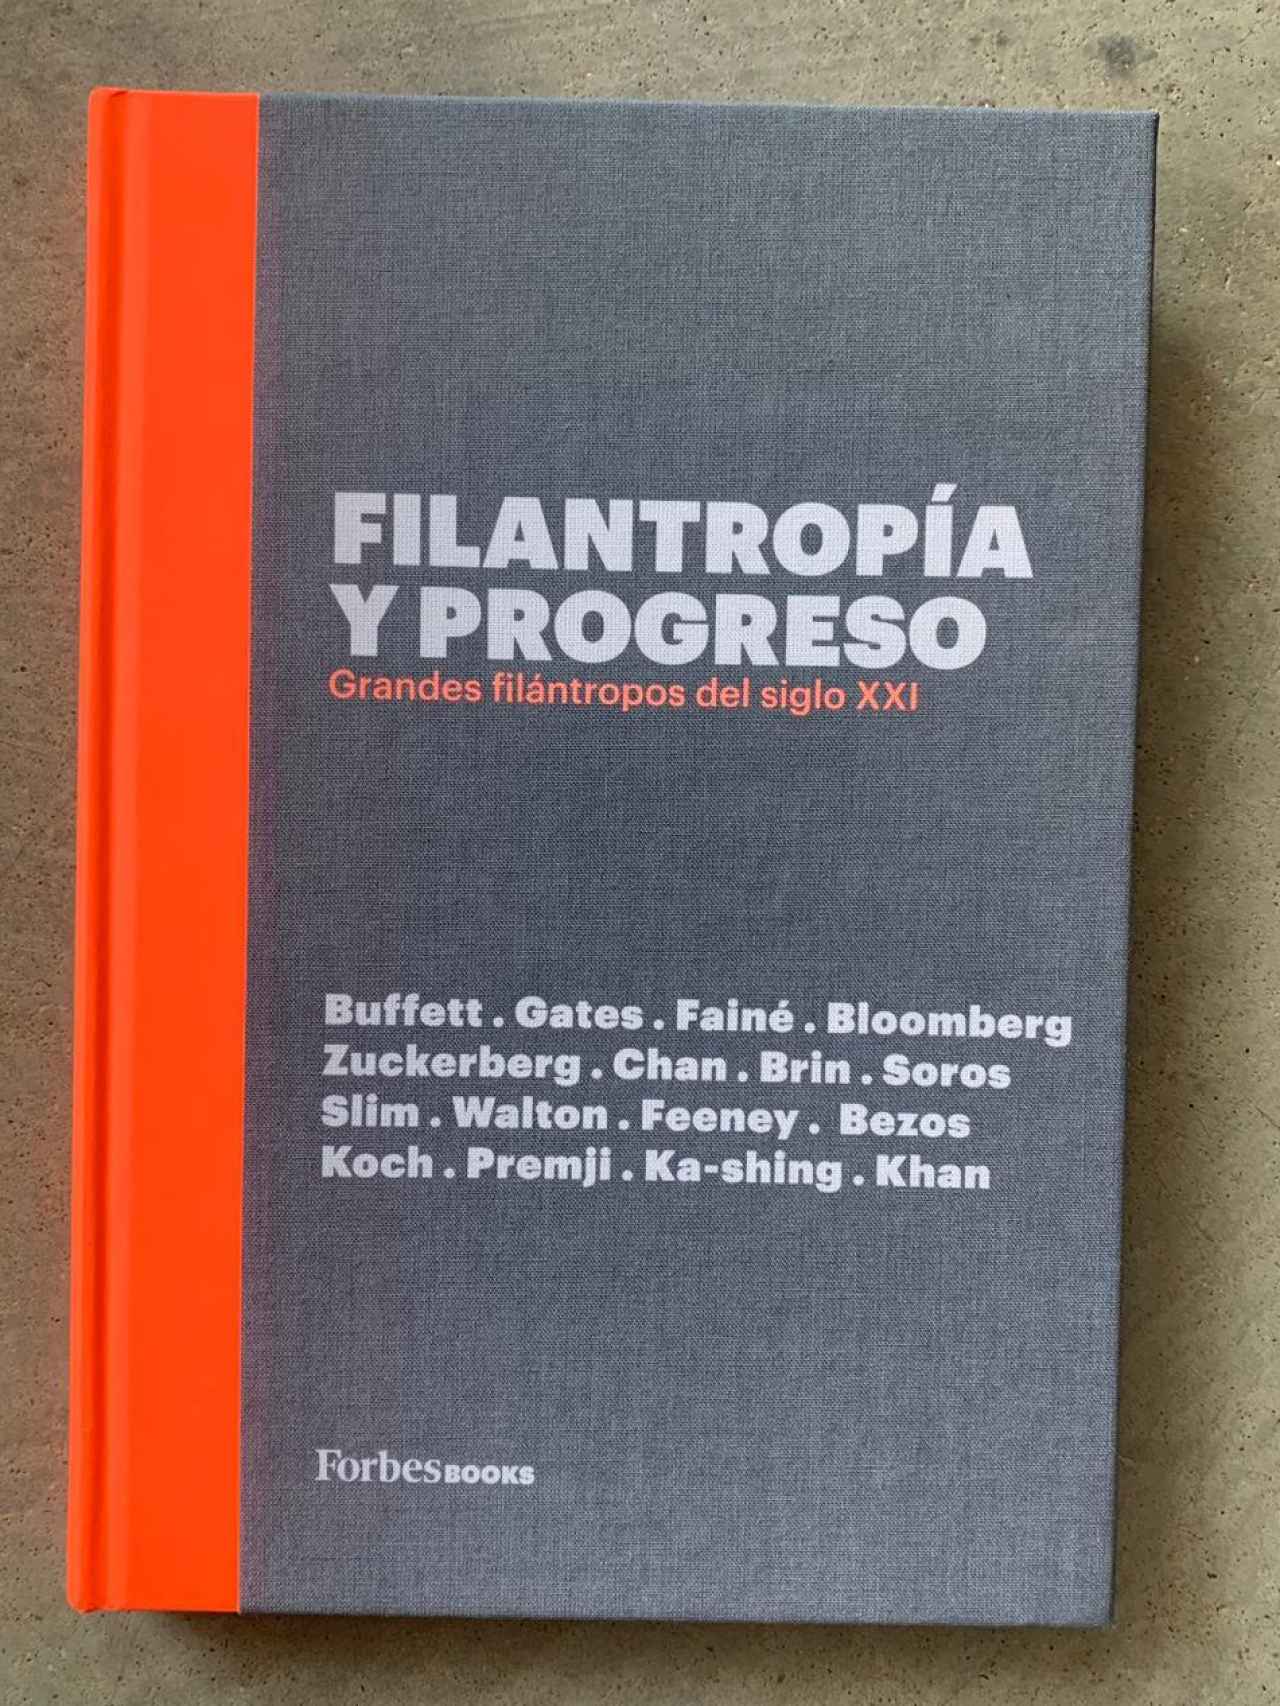 Entelado, con quinto color en la portada, el libro, “Filantropía y Progreso”